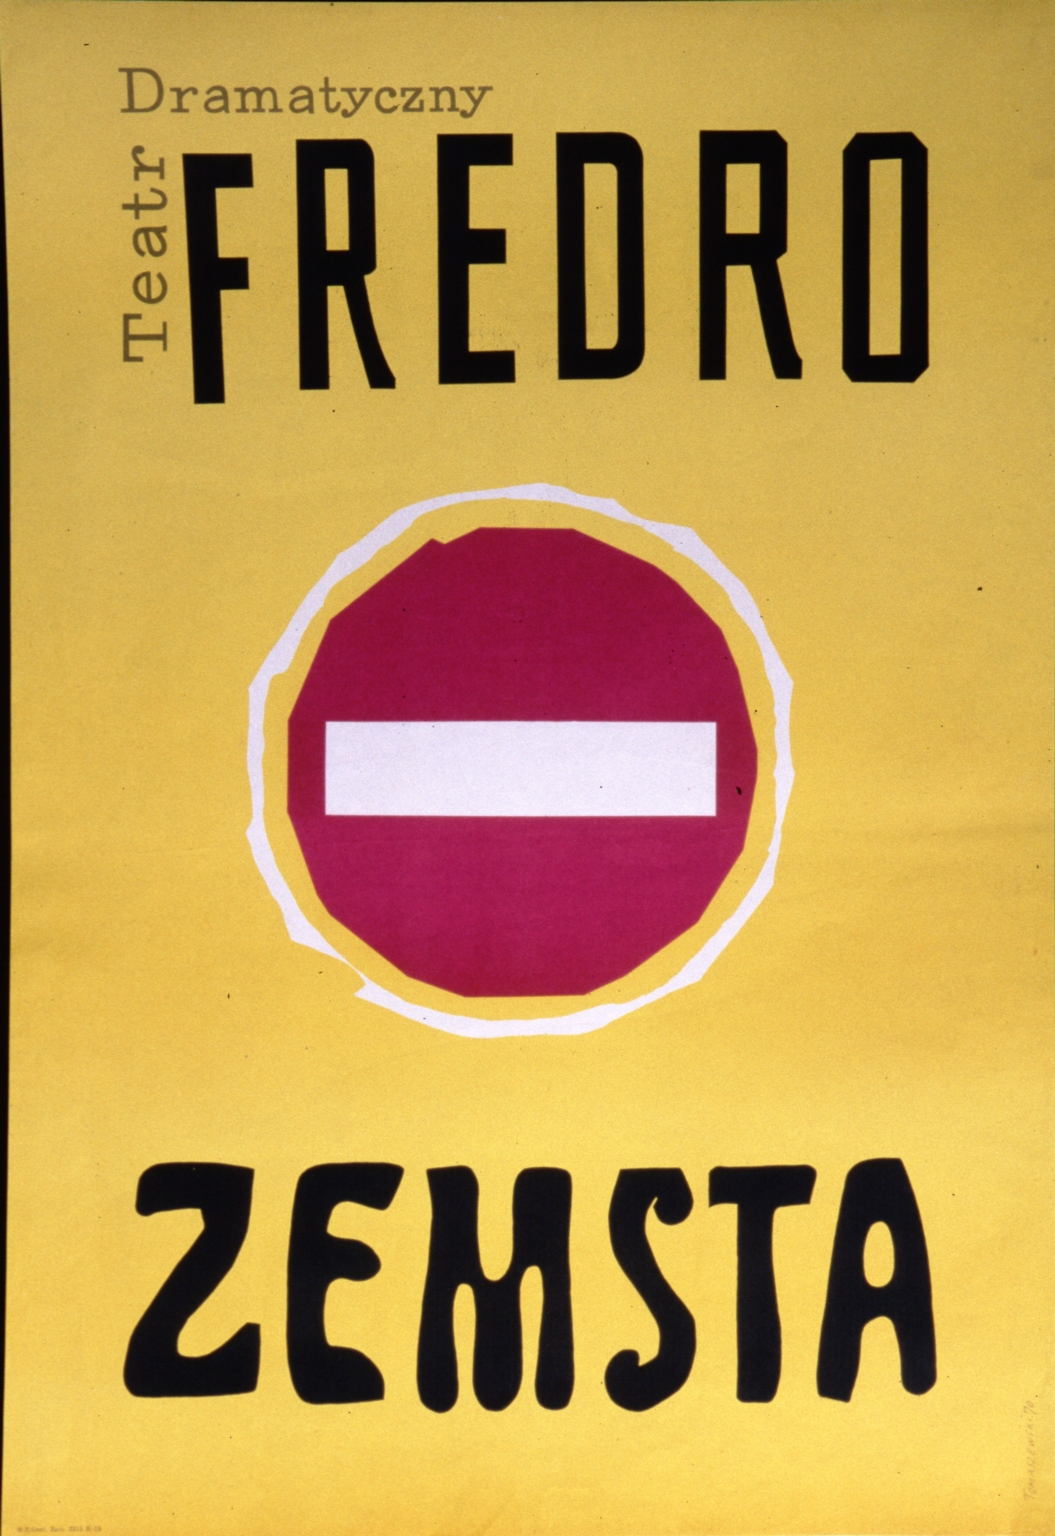 Fredo, Zemsta: Teatr Dramatyczny